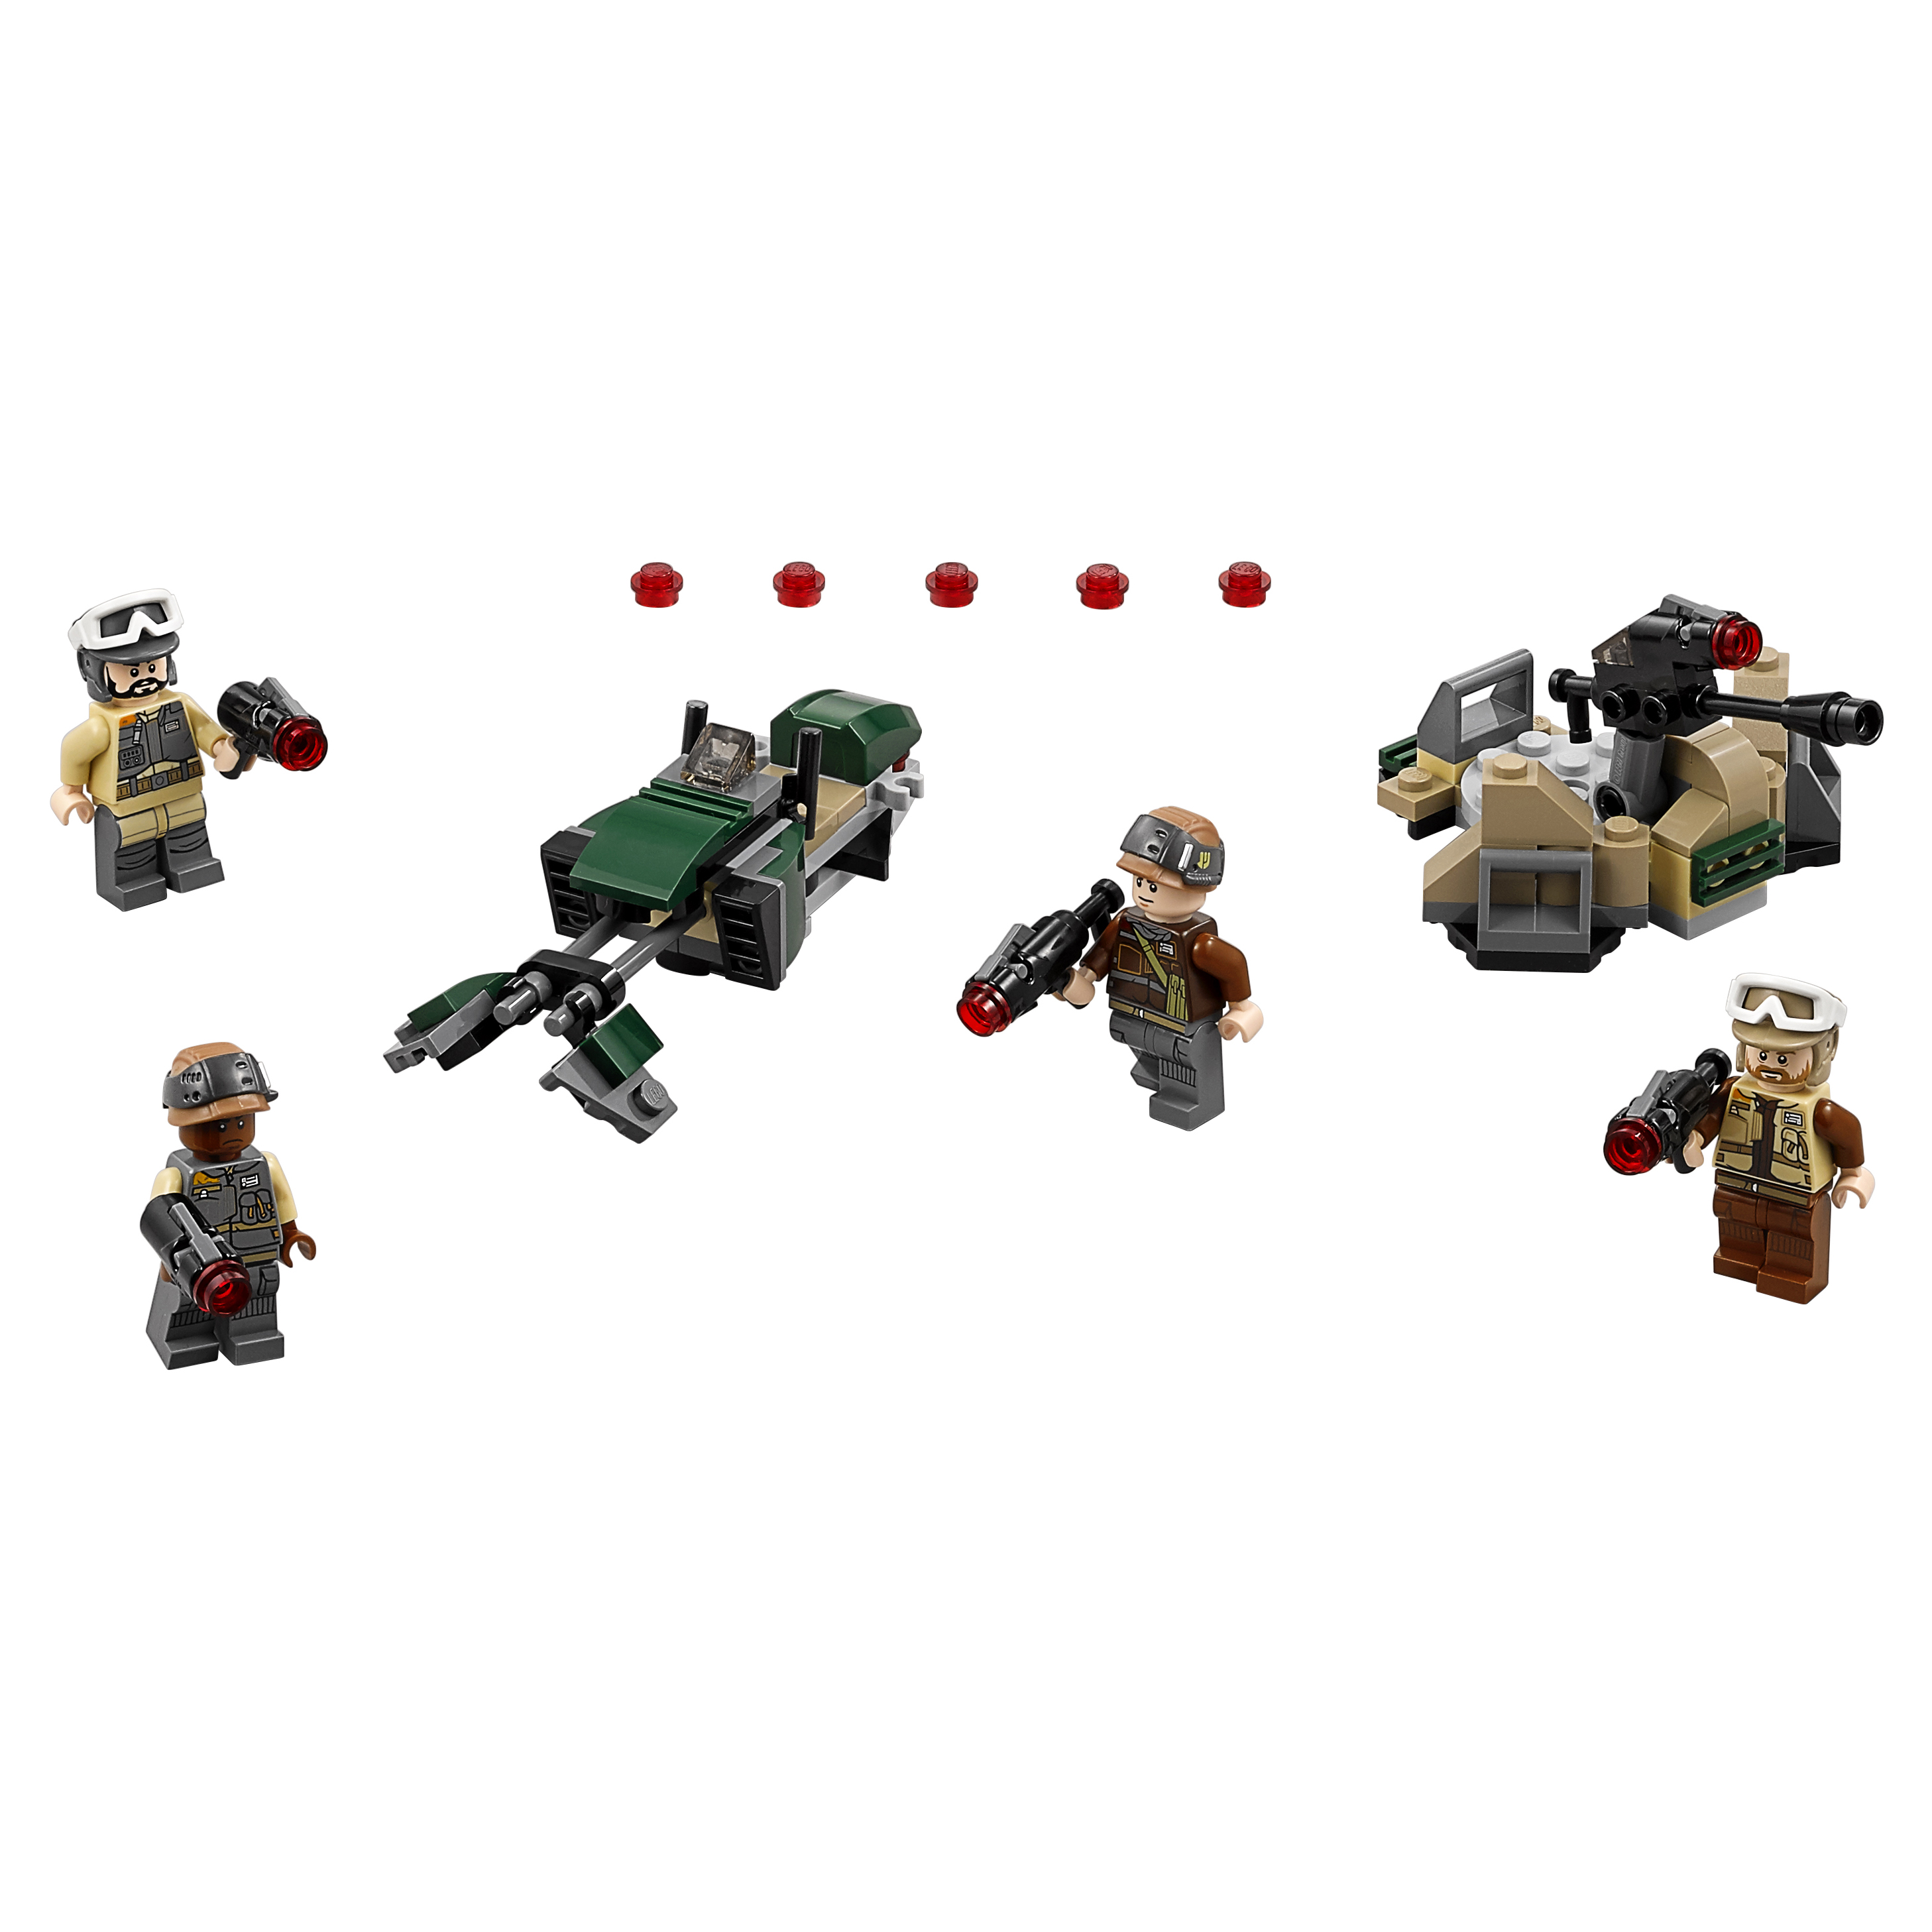 Конструктор LEGO Star Wars Боевой набор Повстанцев (75164) конструктор lego пластина 3 x 6 клин срезанные углы белый набор из 50 шт 241901